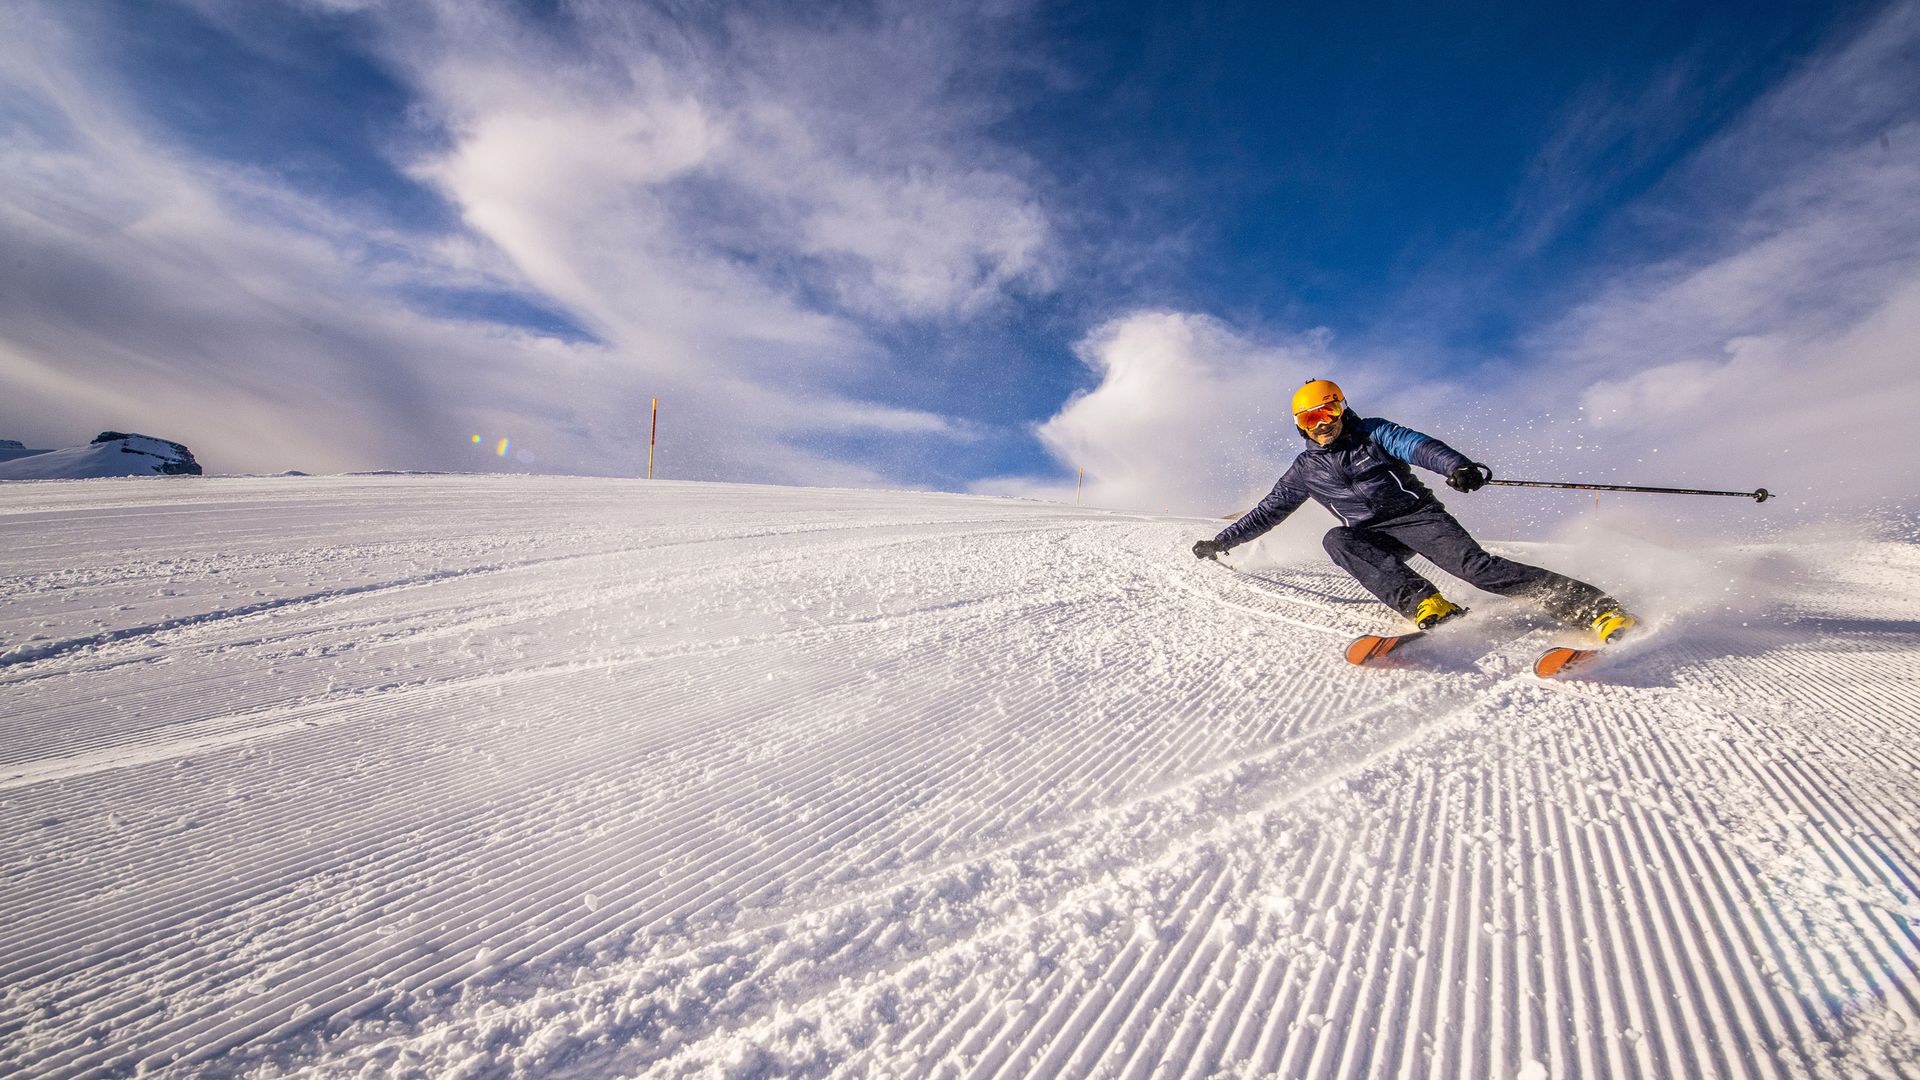 L'image montre un skieur sur une piste fraîchement préparée. Il se penche à pic dans le virage et la neige tourbillonne derrière lui. 